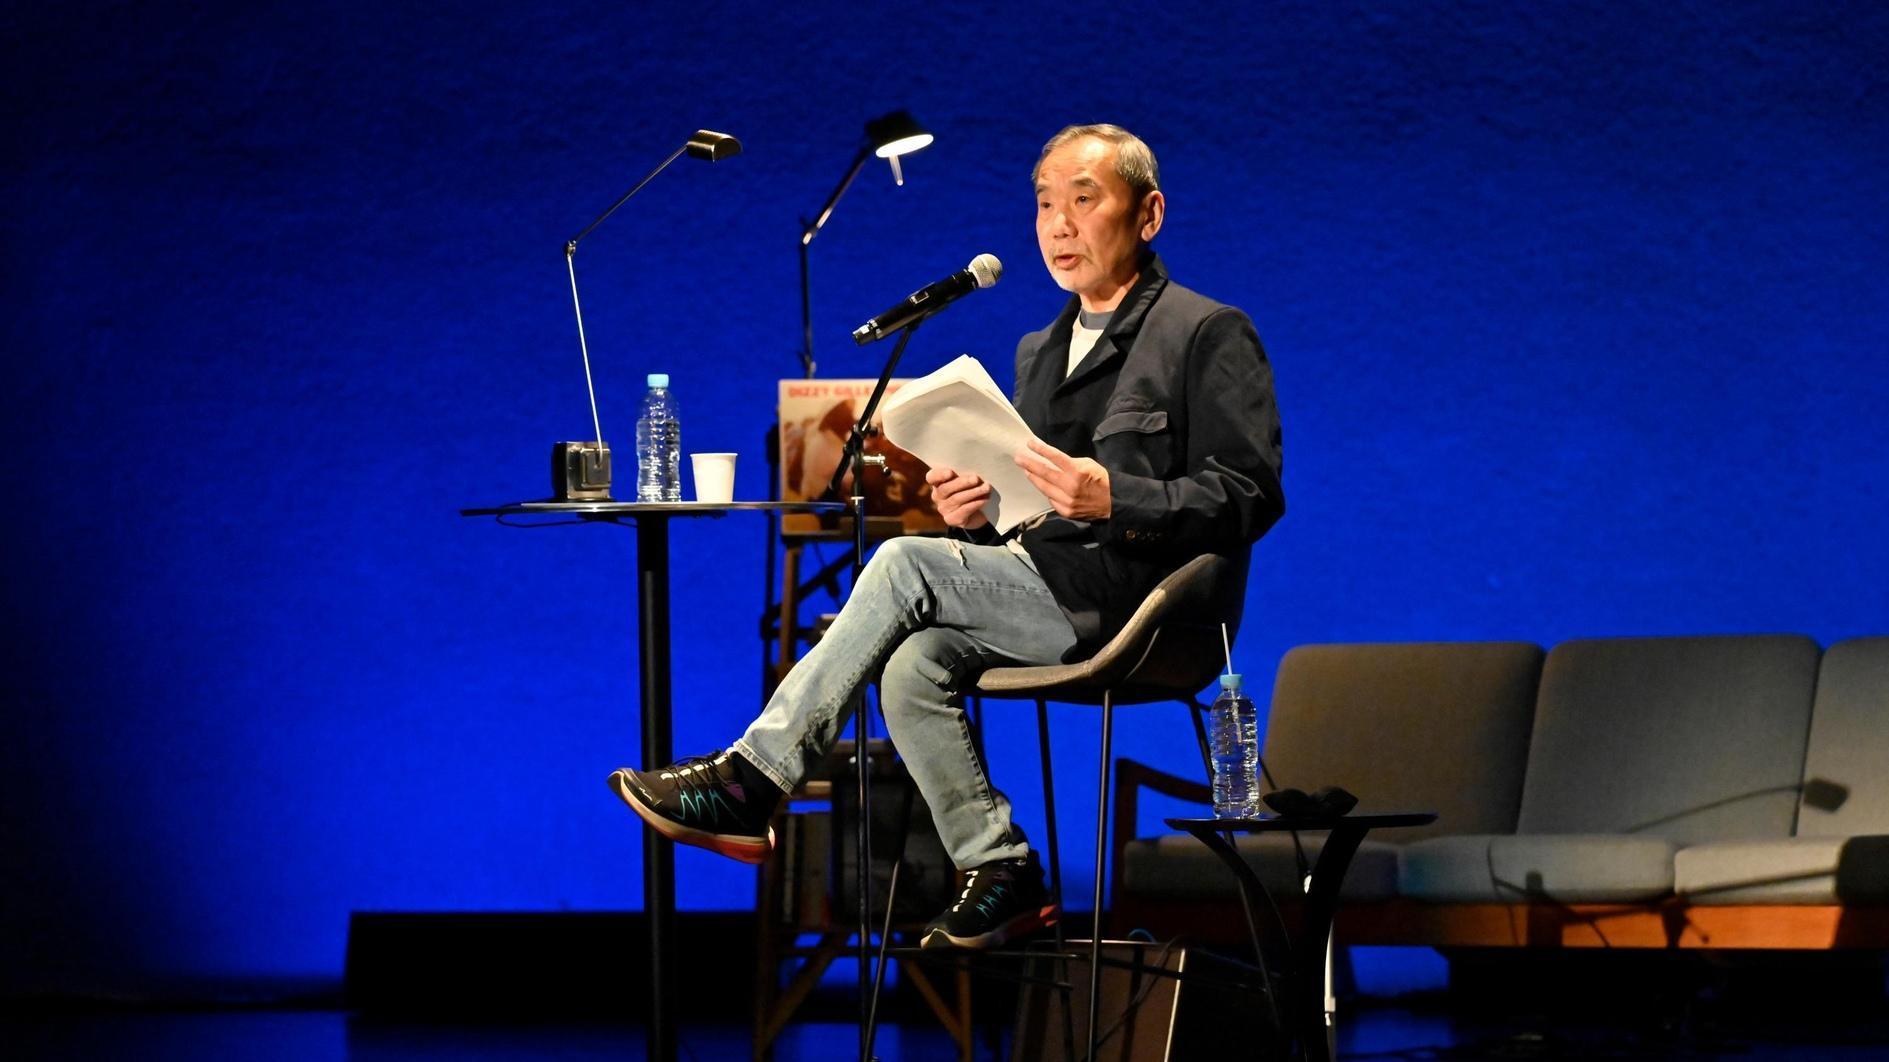 Haruki Murakami onthult zijn nieuwe korte verhaal op een literair evenement in Tokio